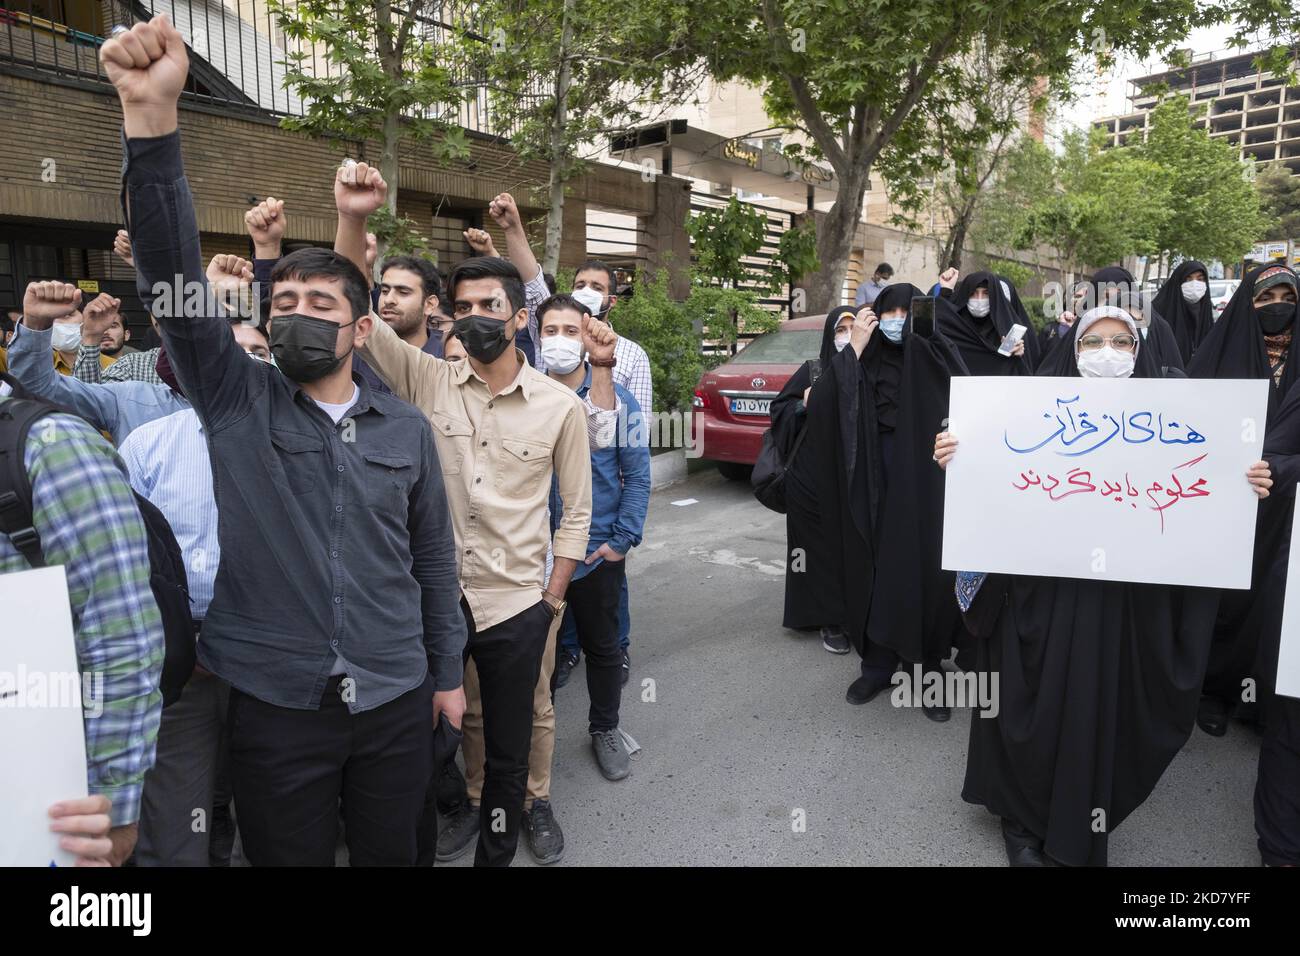 Eine Gruppe iranischer Männer ruft Slogans, um die Koranverbrennung in Schweden zu verurteilen, während eine verschleierte Frau ein Plakat mit persischer Schrift hält, auf dem der Koran verurteilt werden sollte, während einer Protestveranstaltung vor der schwedischen Botschaft im Norden Teherans am 18. April 2022. (Foto von Morteza Nikoubazl/NurPhoto) Stockfoto